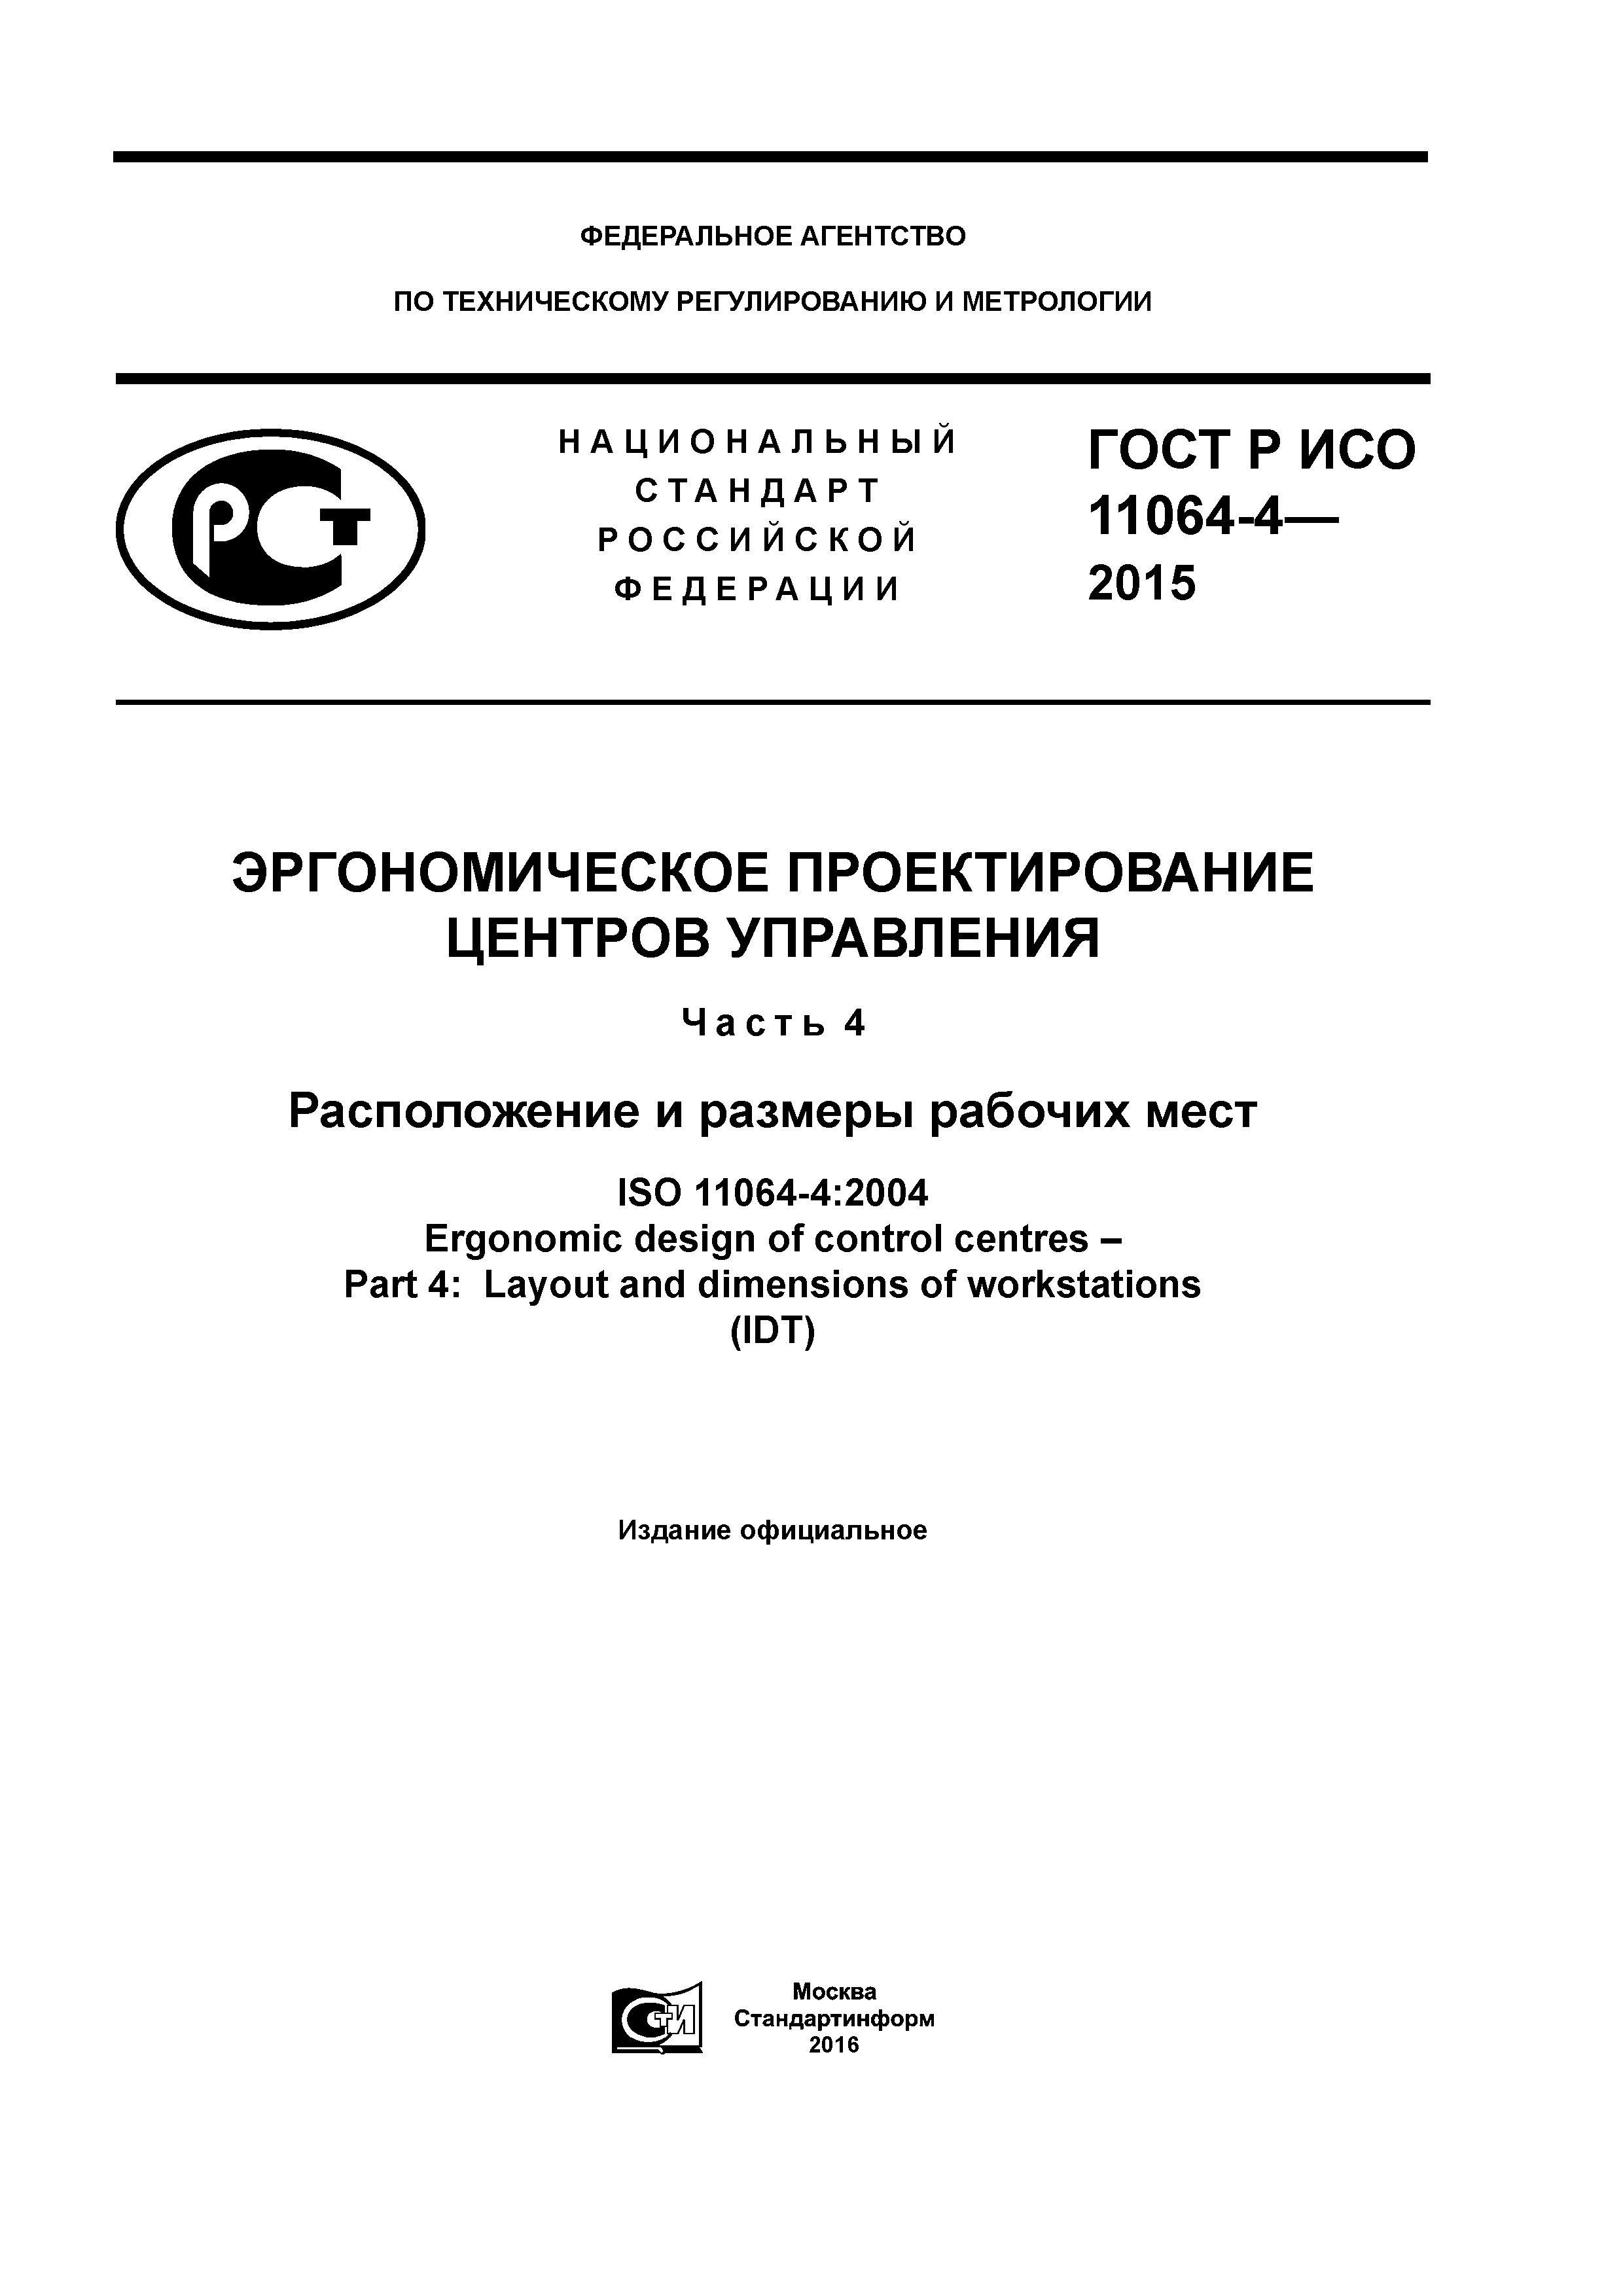 ГОСТ Р ИСО 11064-4-2015